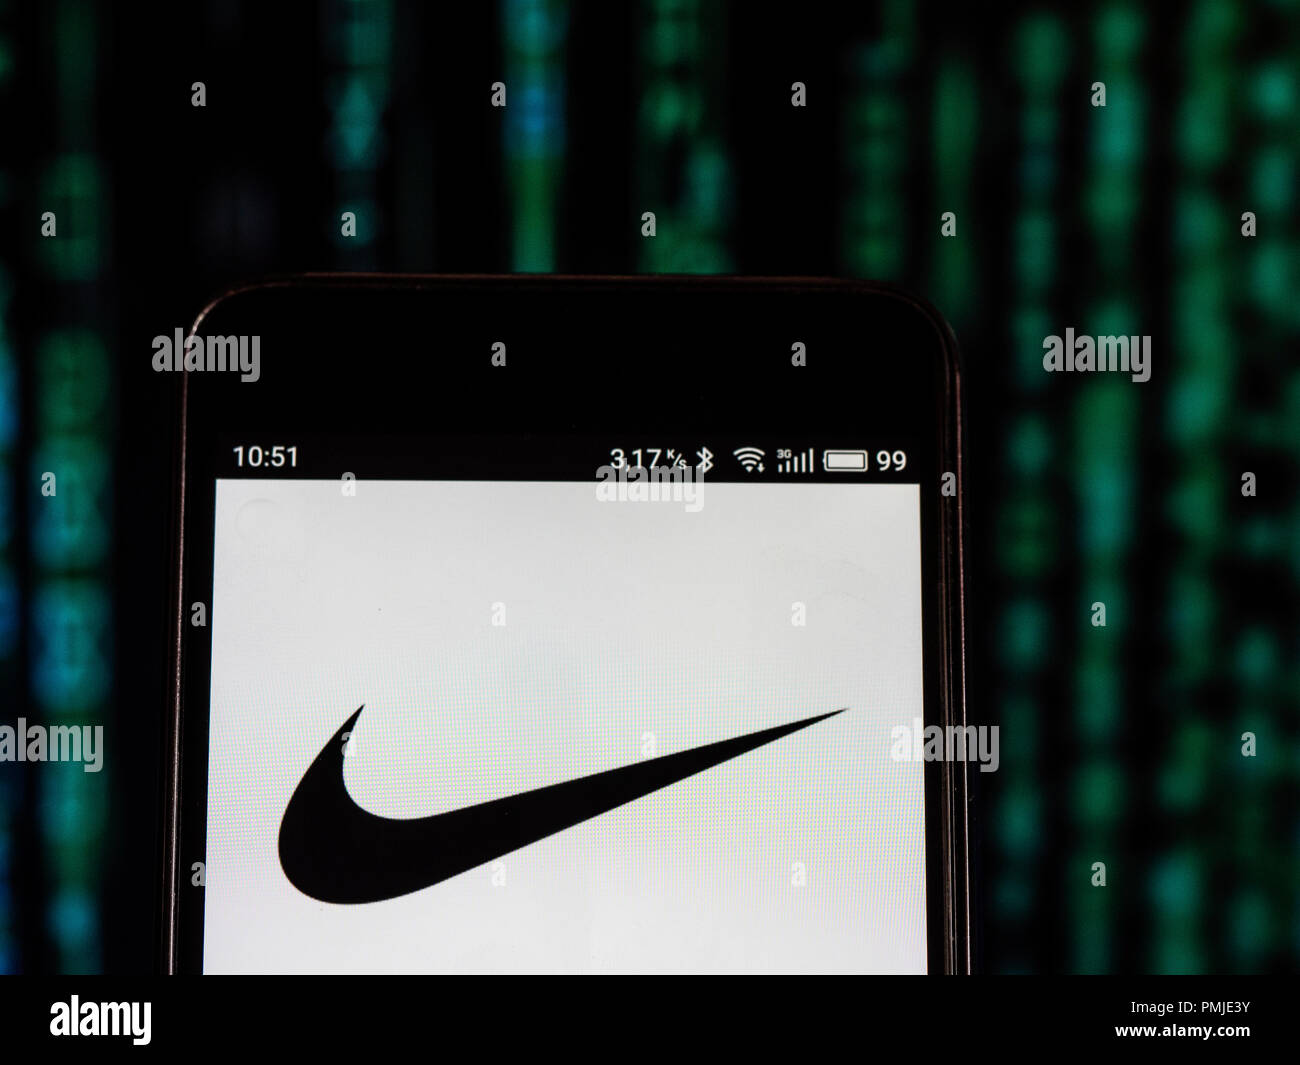 Nike inc imágenes de alta resolución - Alamy